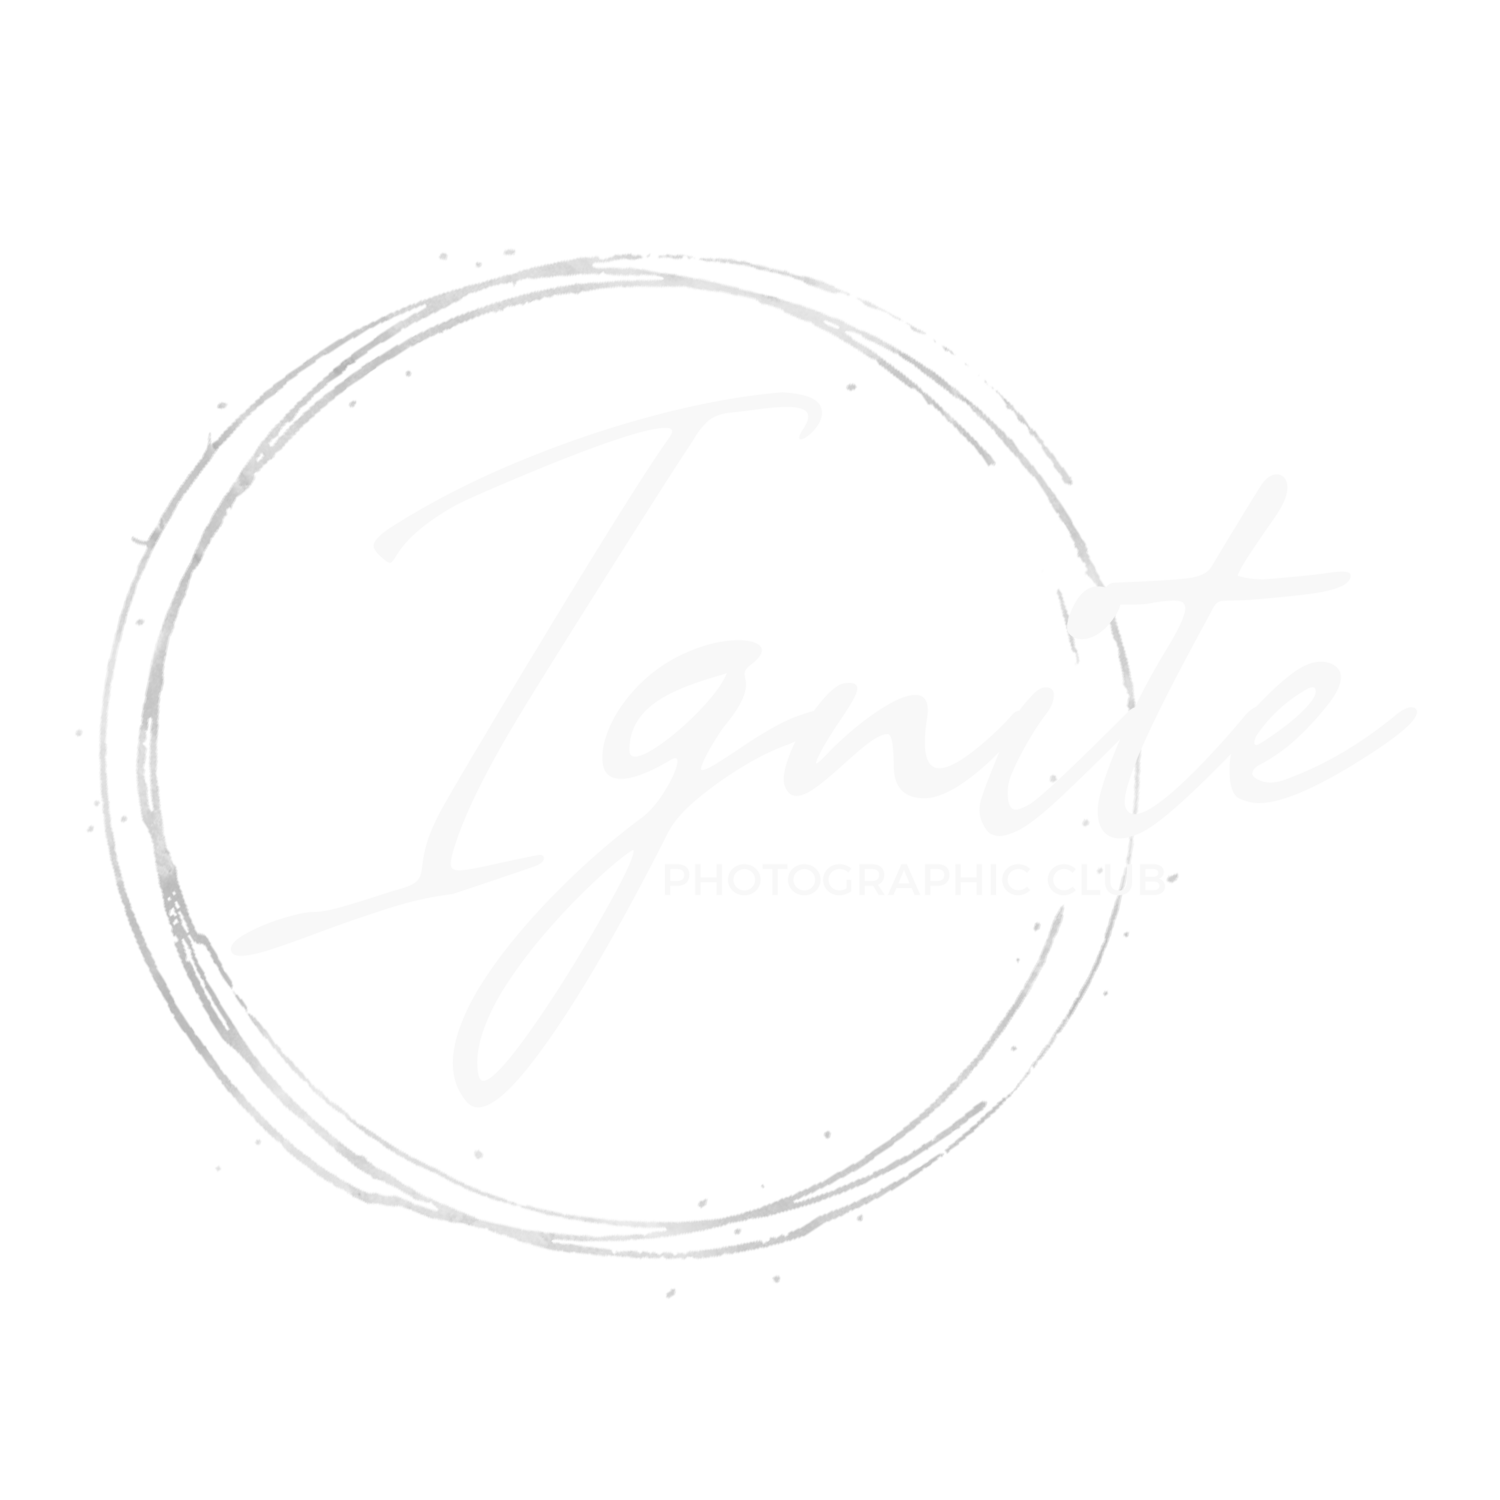 IGNITE PHOTOGRAPHIC CLUB